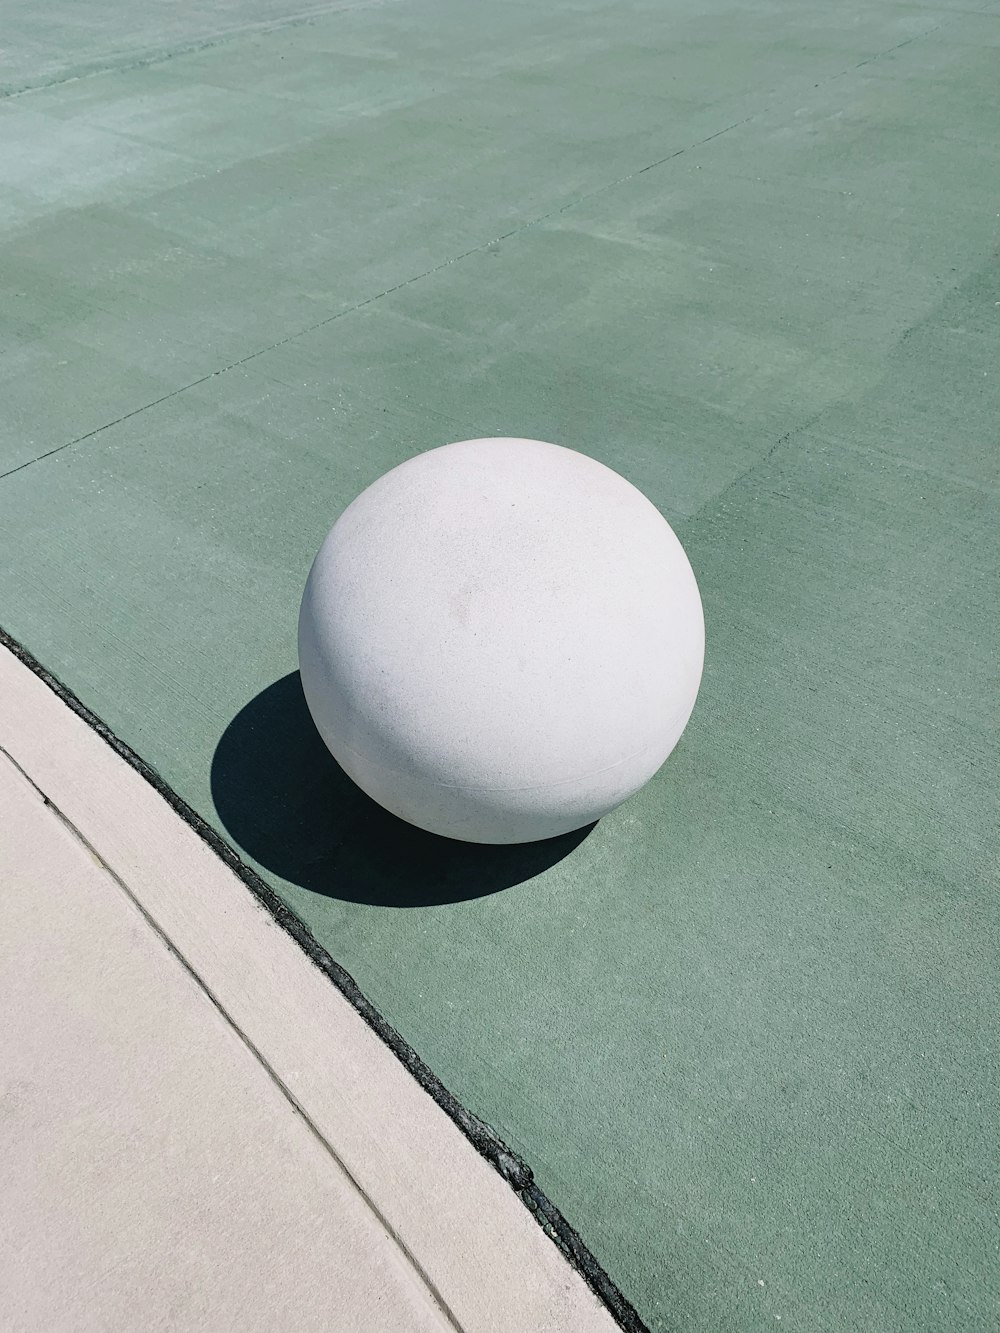 round white ball